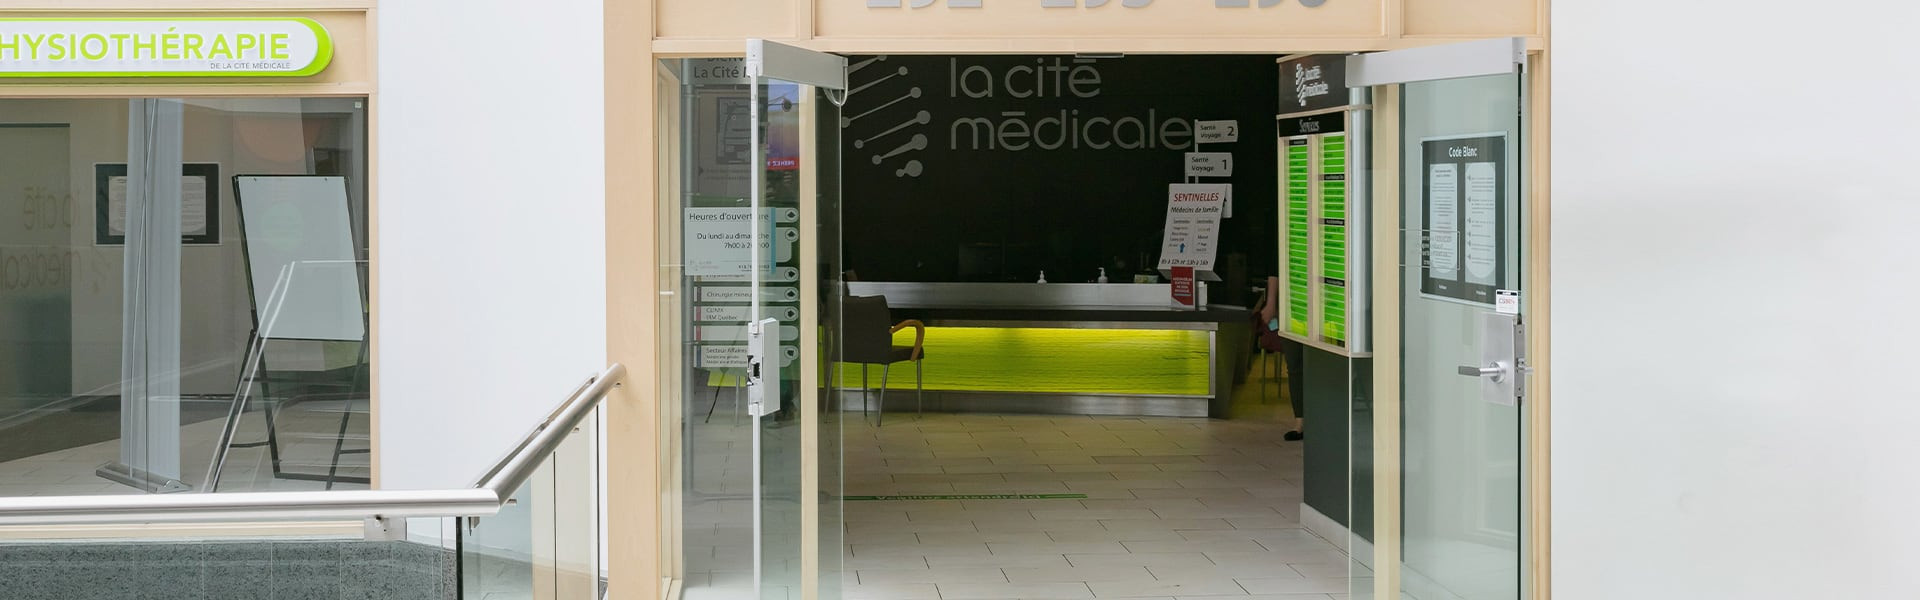 La Cité médicale | Place de la Cité